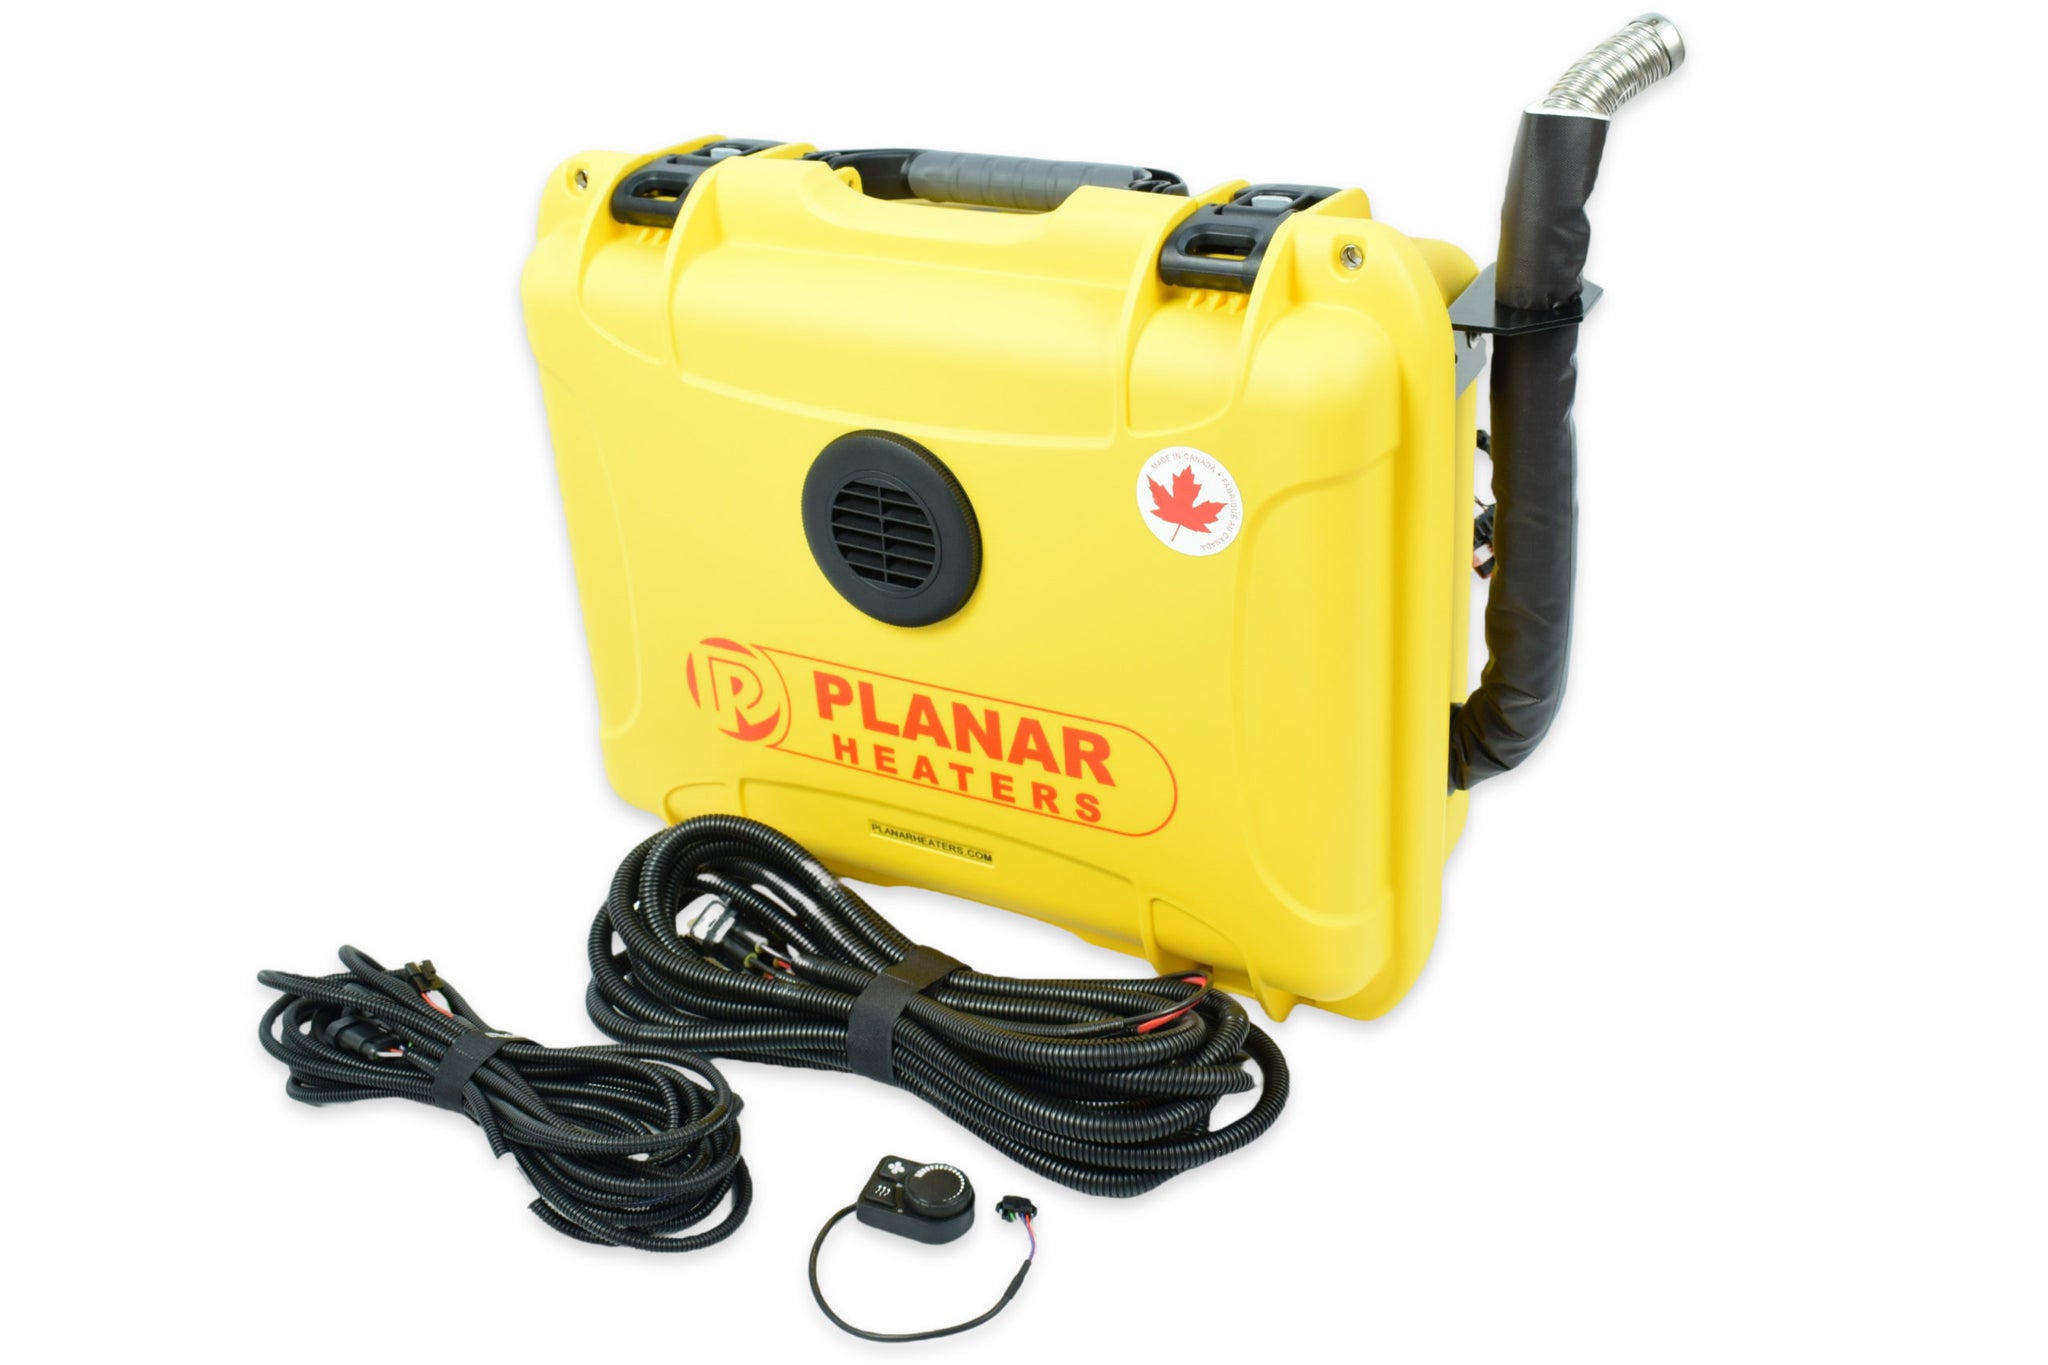 Planar Portable Diesel Heater – Overland Addict